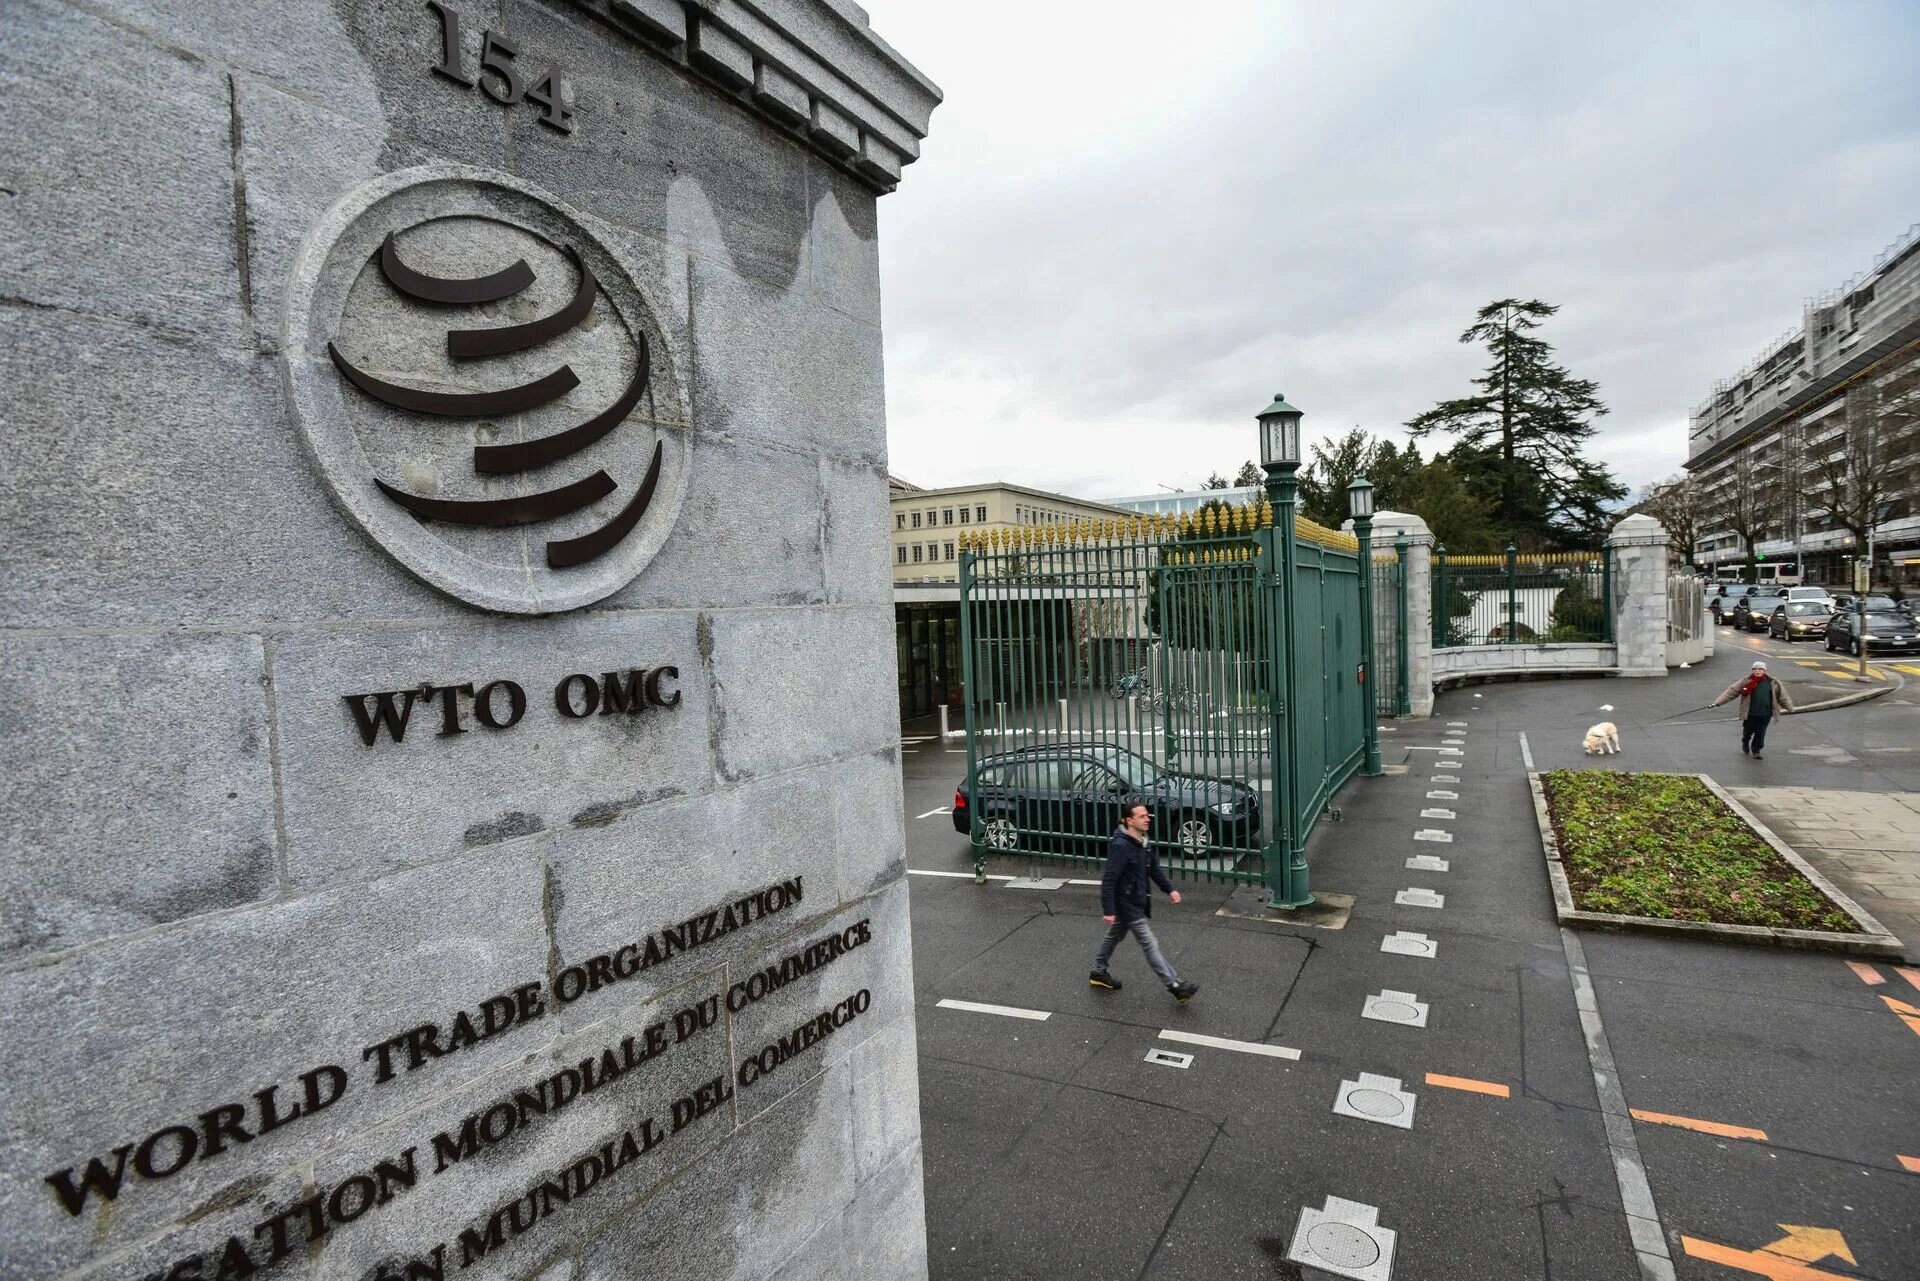 Вто оон. Штаб квартира ВТО В Женеве. Здание ВТО Женева. ВТО Женева Швейцария. Всемирная торговая организация штаб квартира.